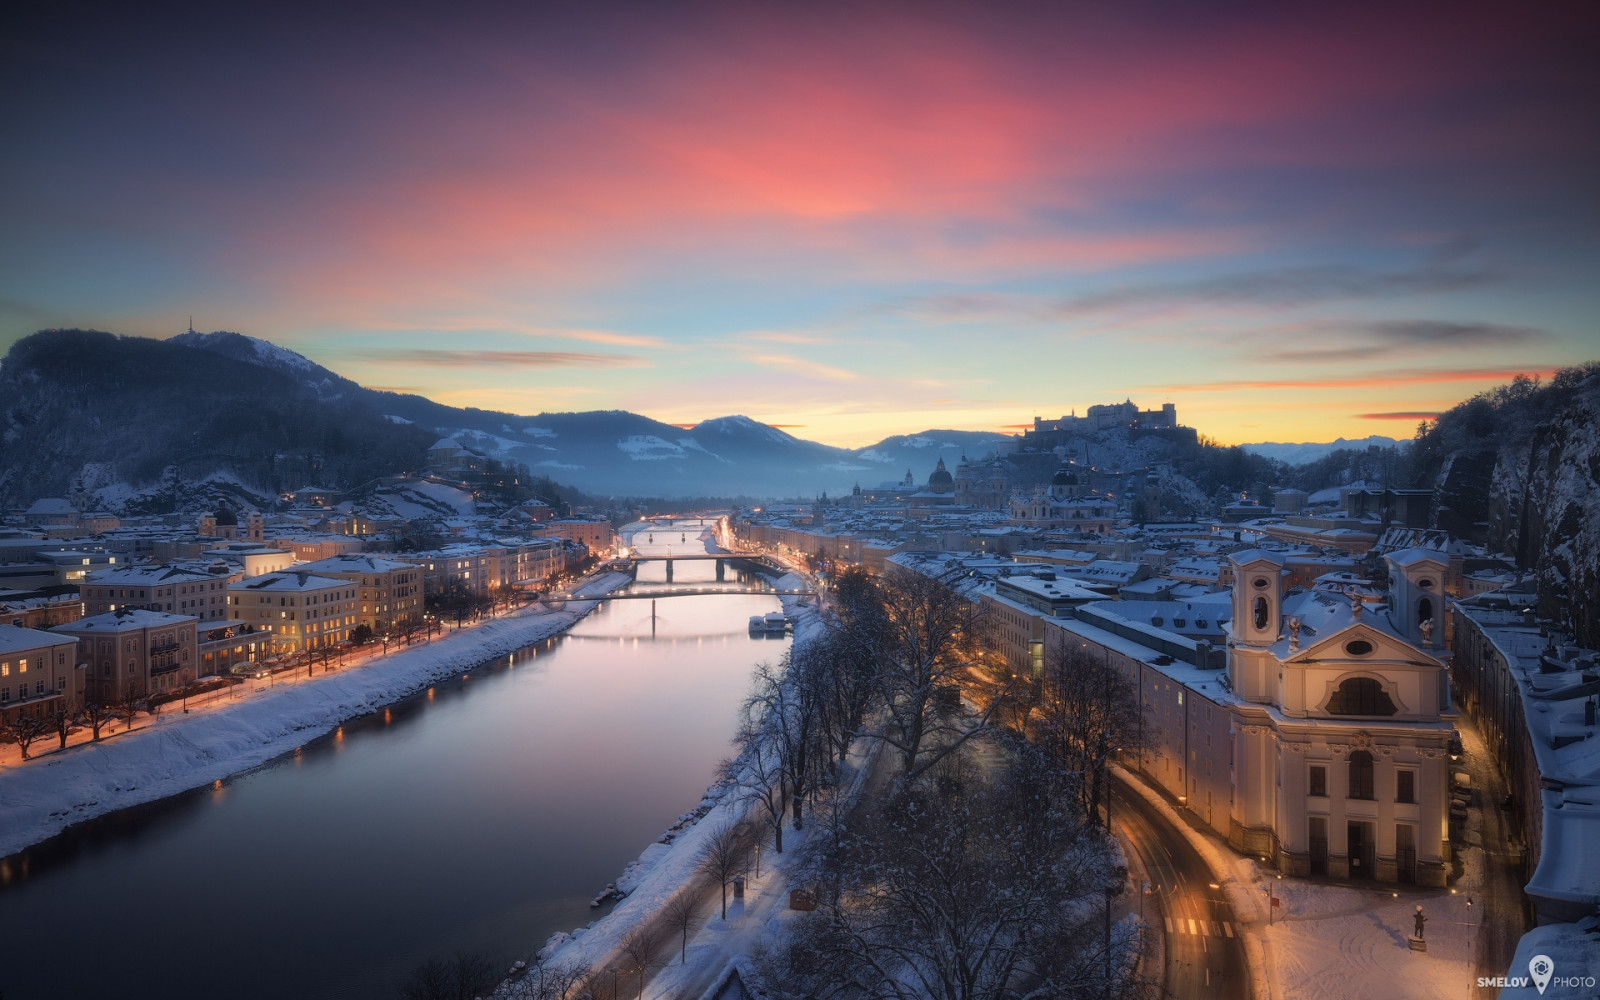 เมือง, แม่น้ำ, ฤดูหนาว, ไฟ, บ้าน, สะพาน, ออสเตรีย, Salzburg